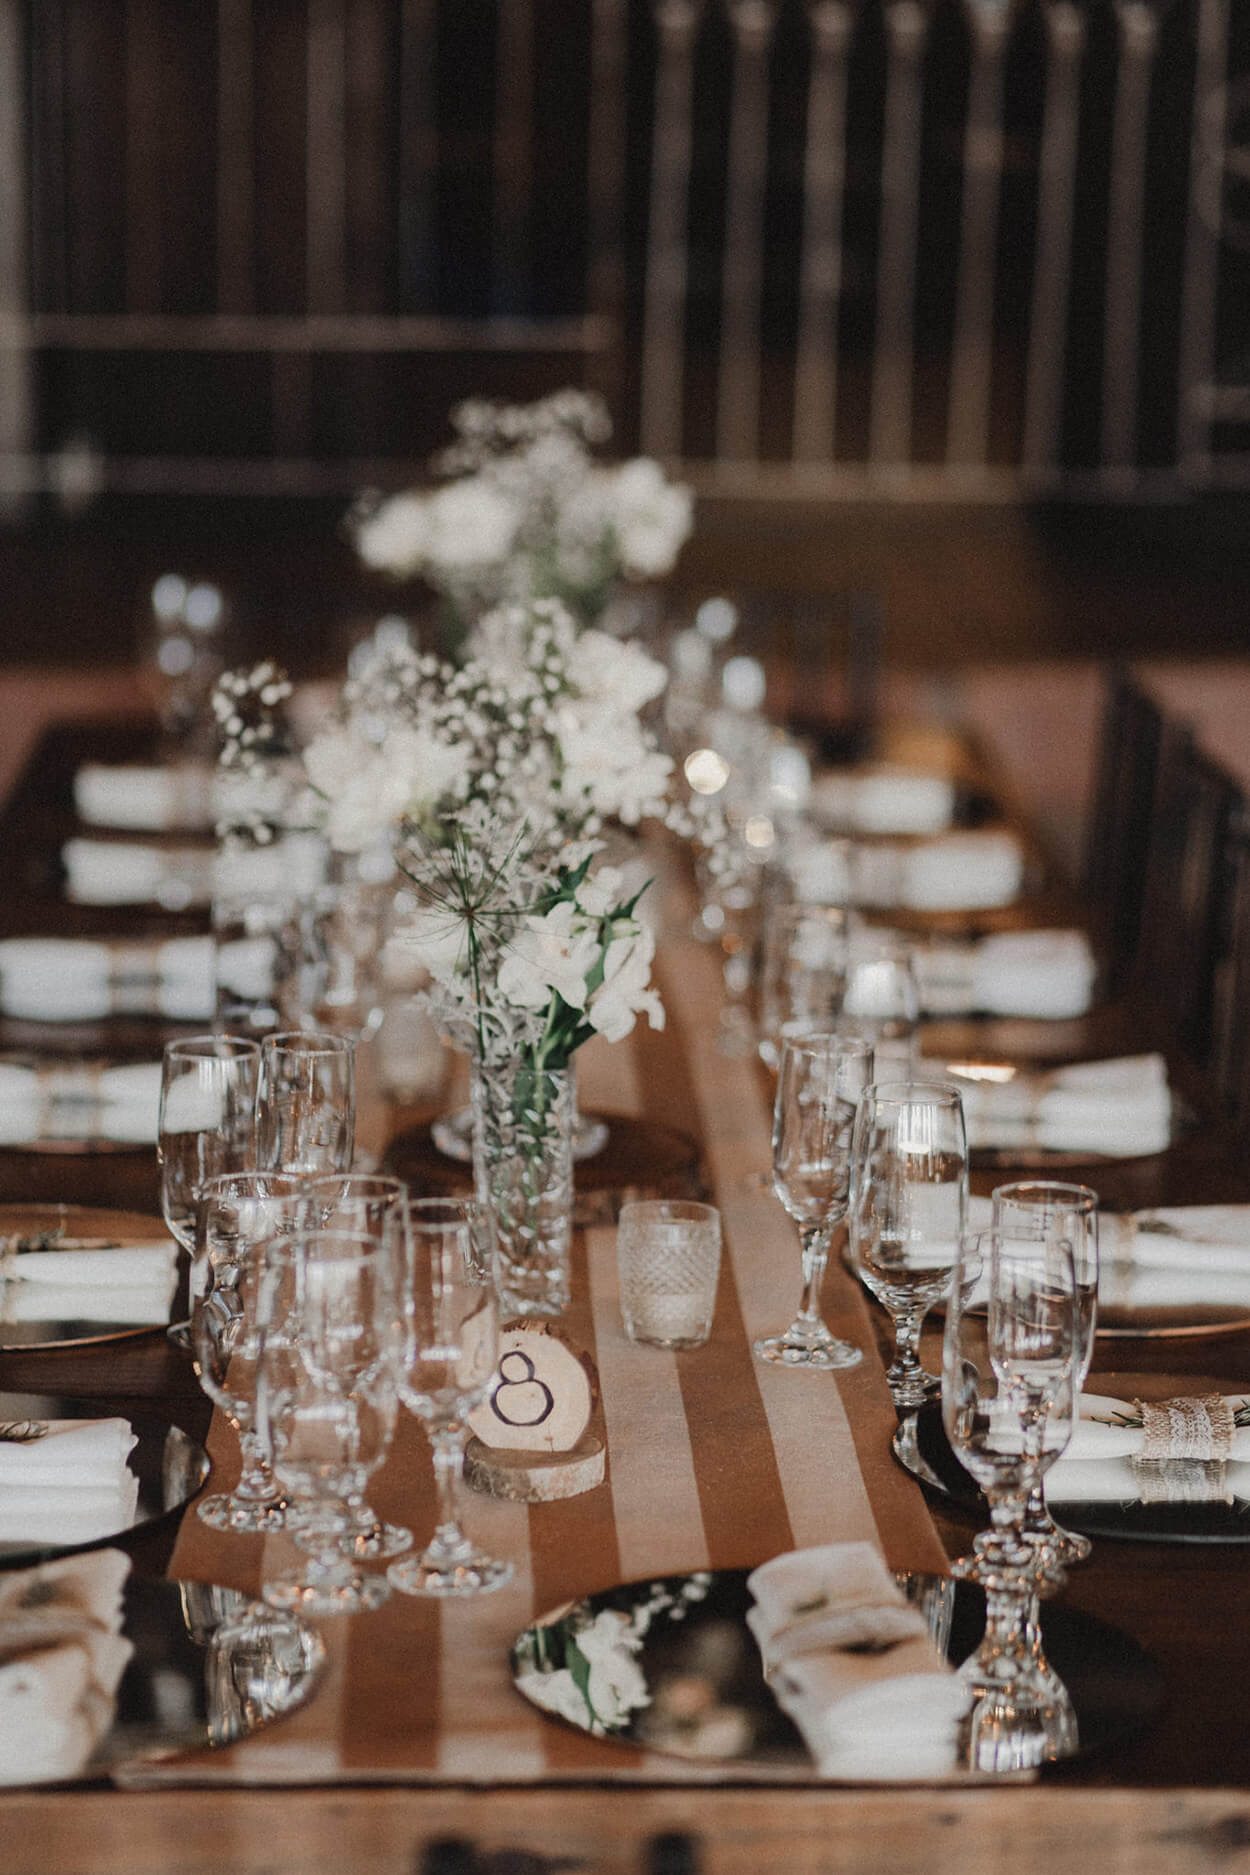 mesa posta com tecido marrom listrado e flres brancos em vasos de vidro no centro